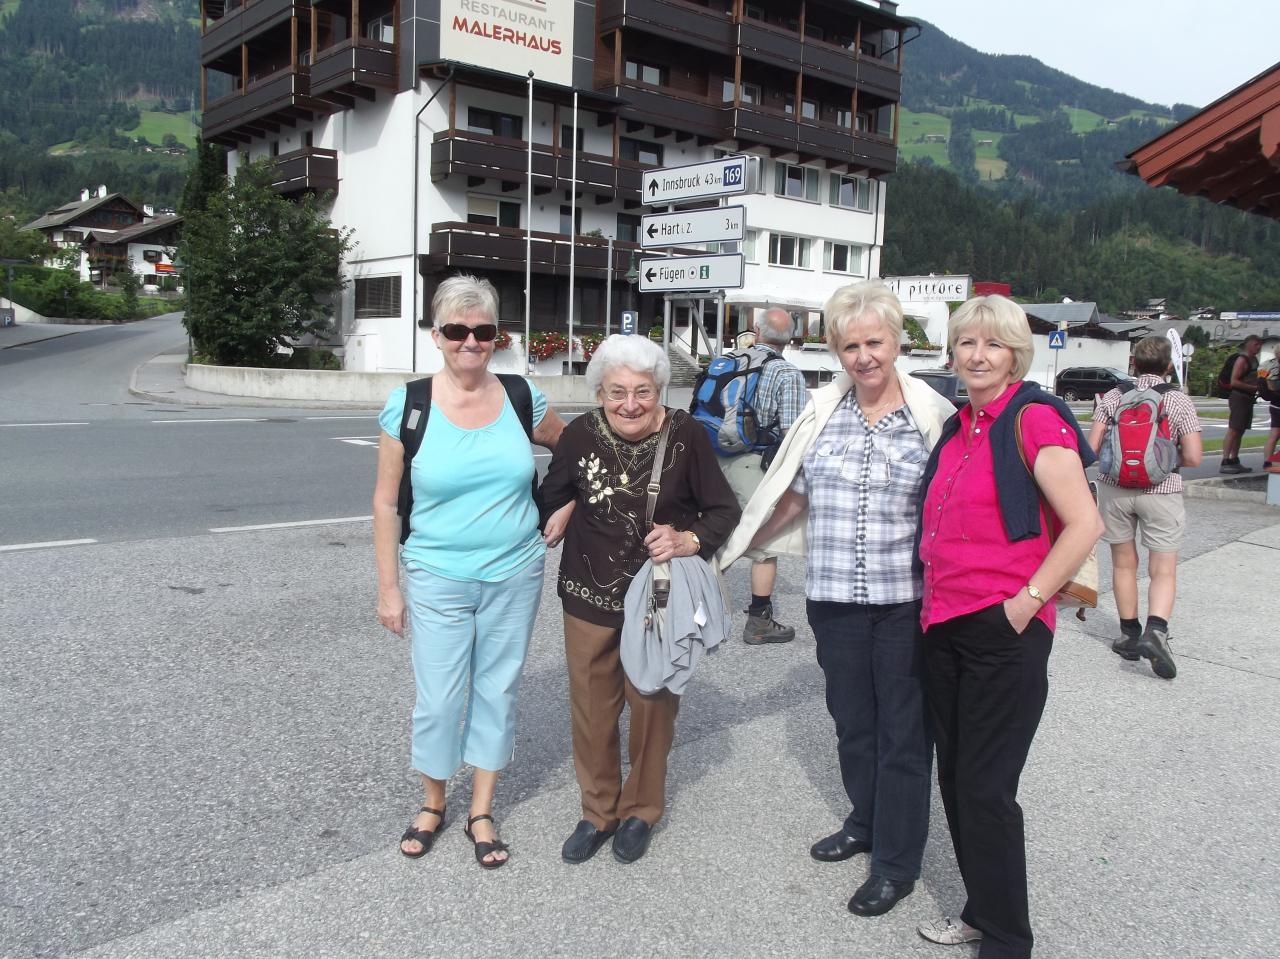 Album photos de notre voyage en Autriche